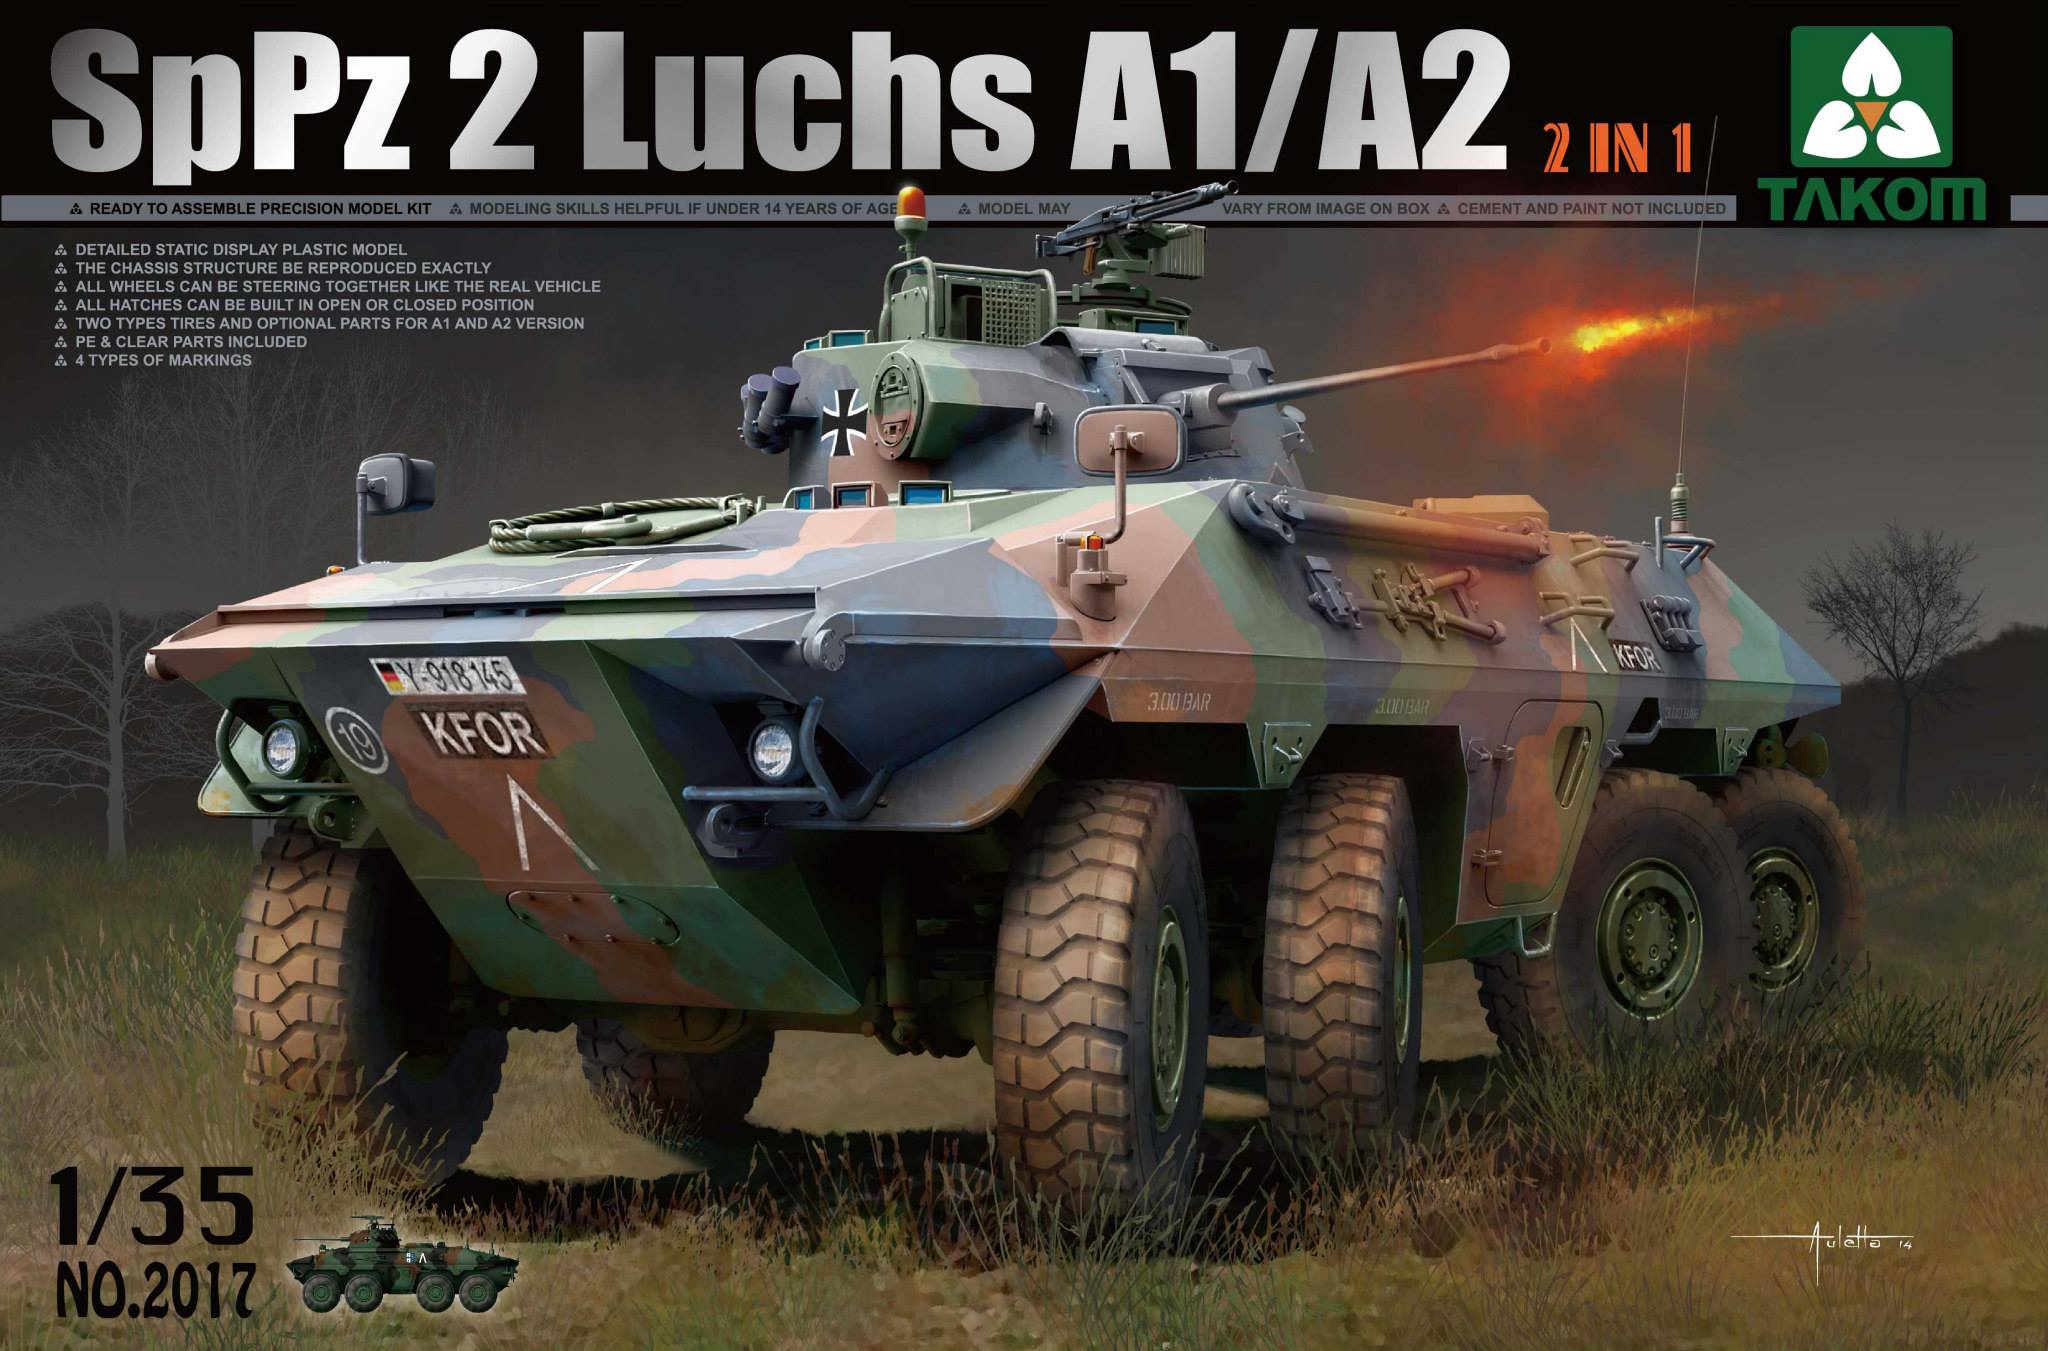 Bundeswehr SpPz 2 Luchs A1/A2 (2 in 1)